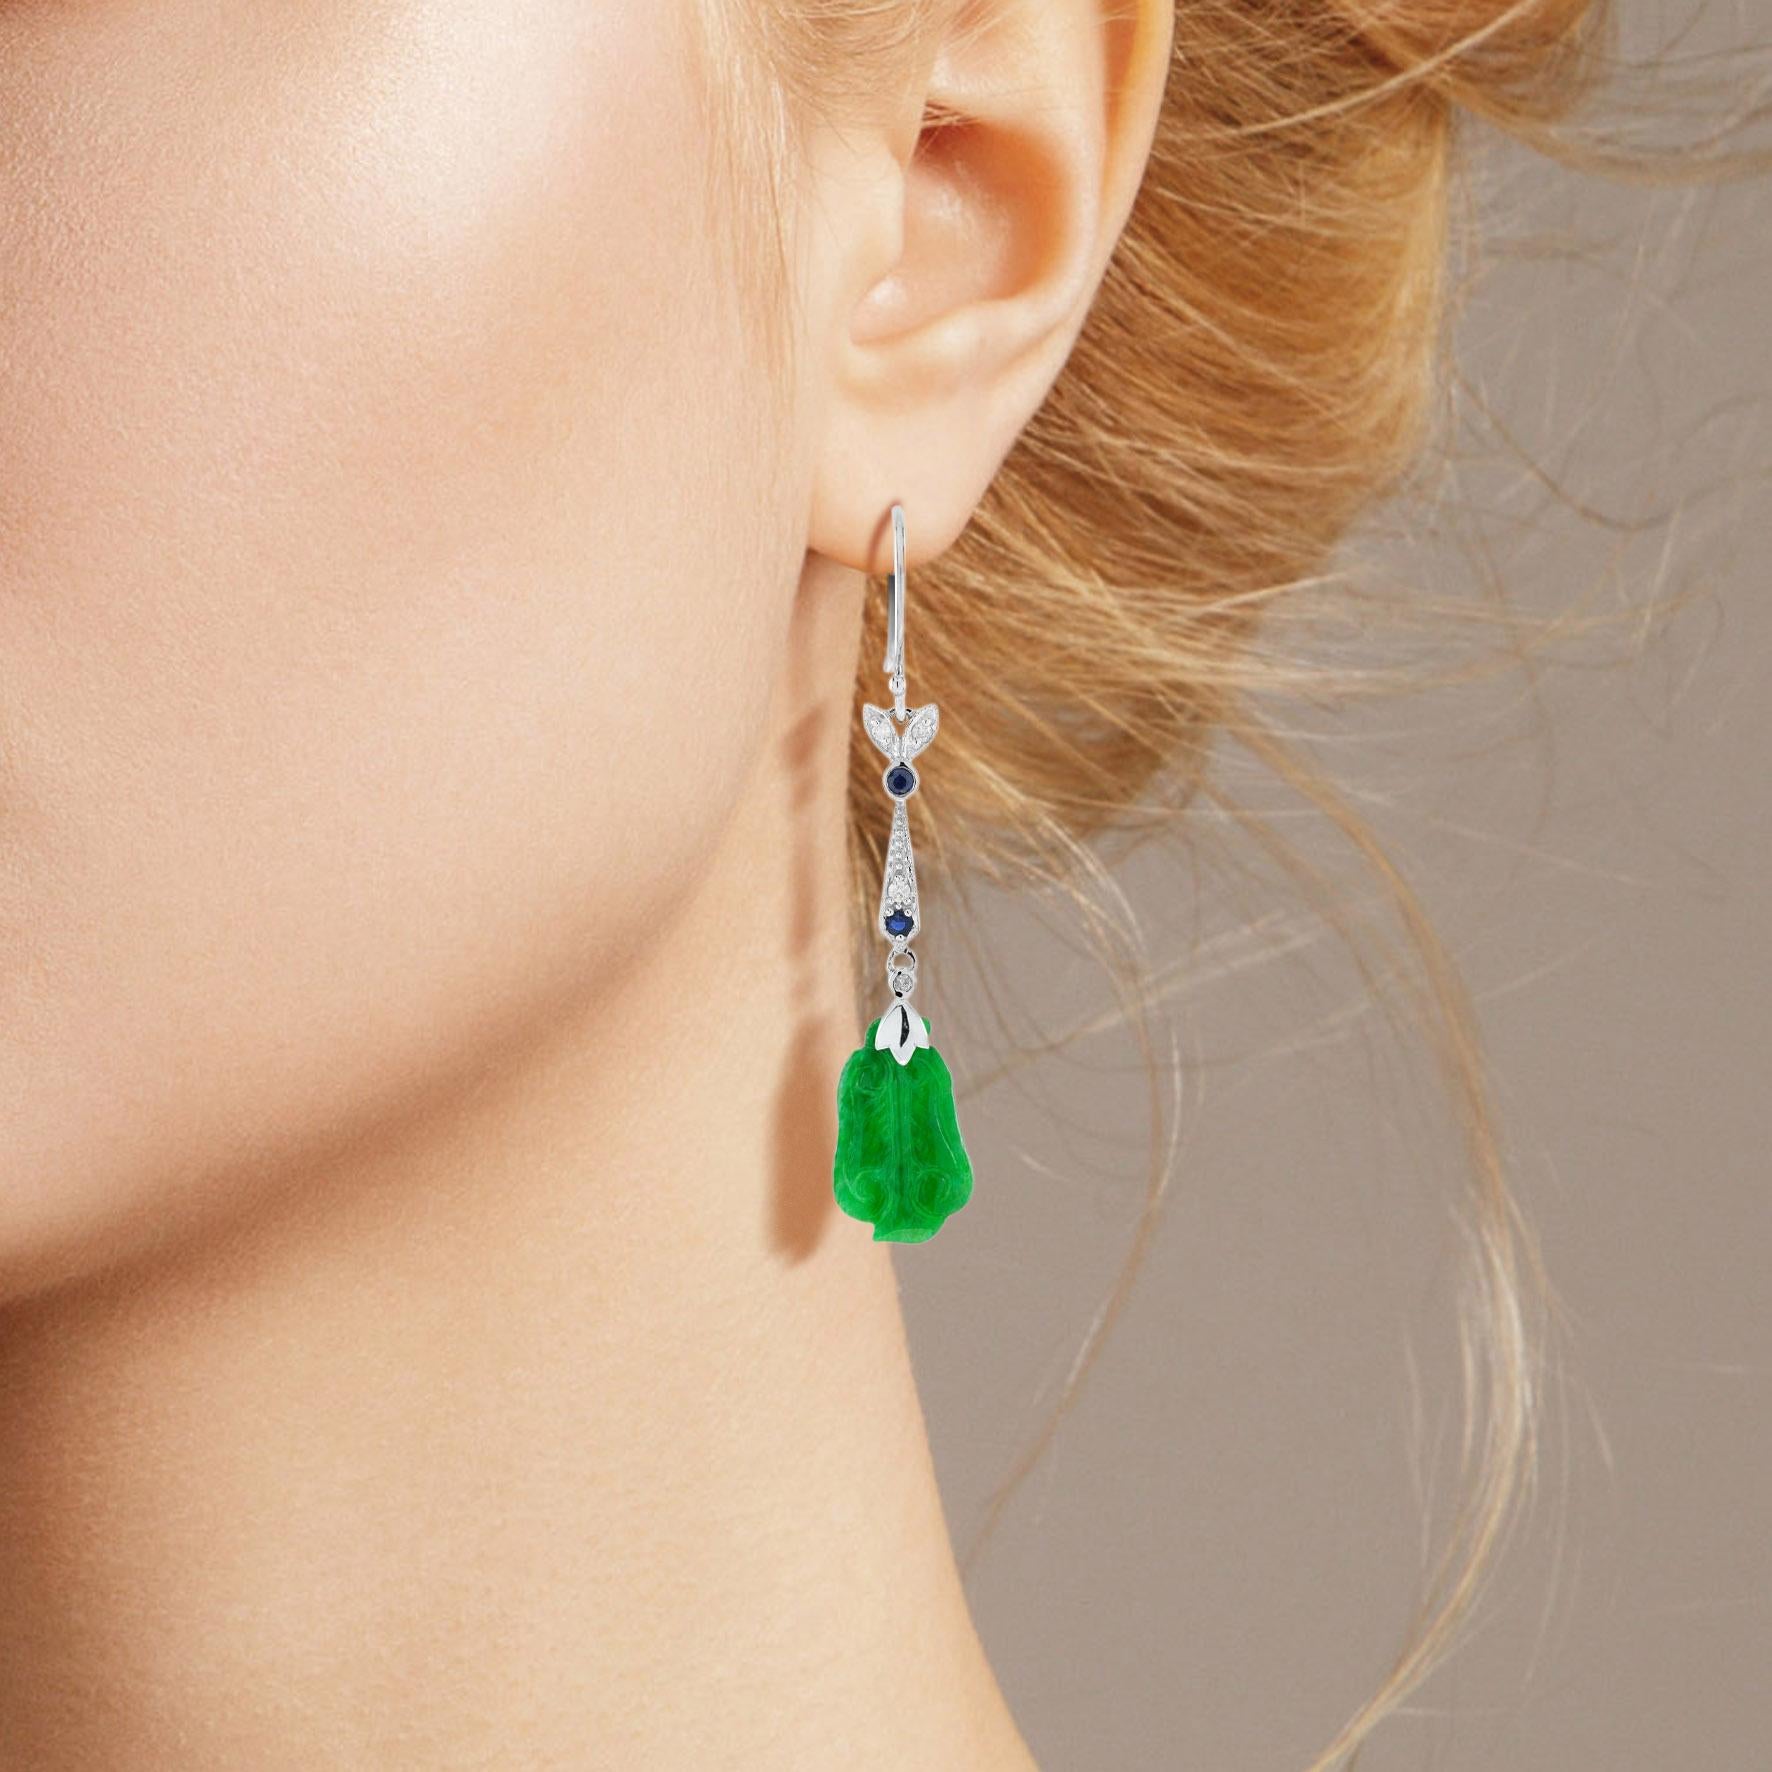 Die natürliche Jade in diesen schönen Ohrringen hat eine ganz besondere Form. Beide Stücke haben eine kräftige grüne Farbe und gute Schnitzereien. Die Jade hängt in einer Fassung aus 9 Karat Weißgold mit einem Diamantblatt und runden blauen Saphiren